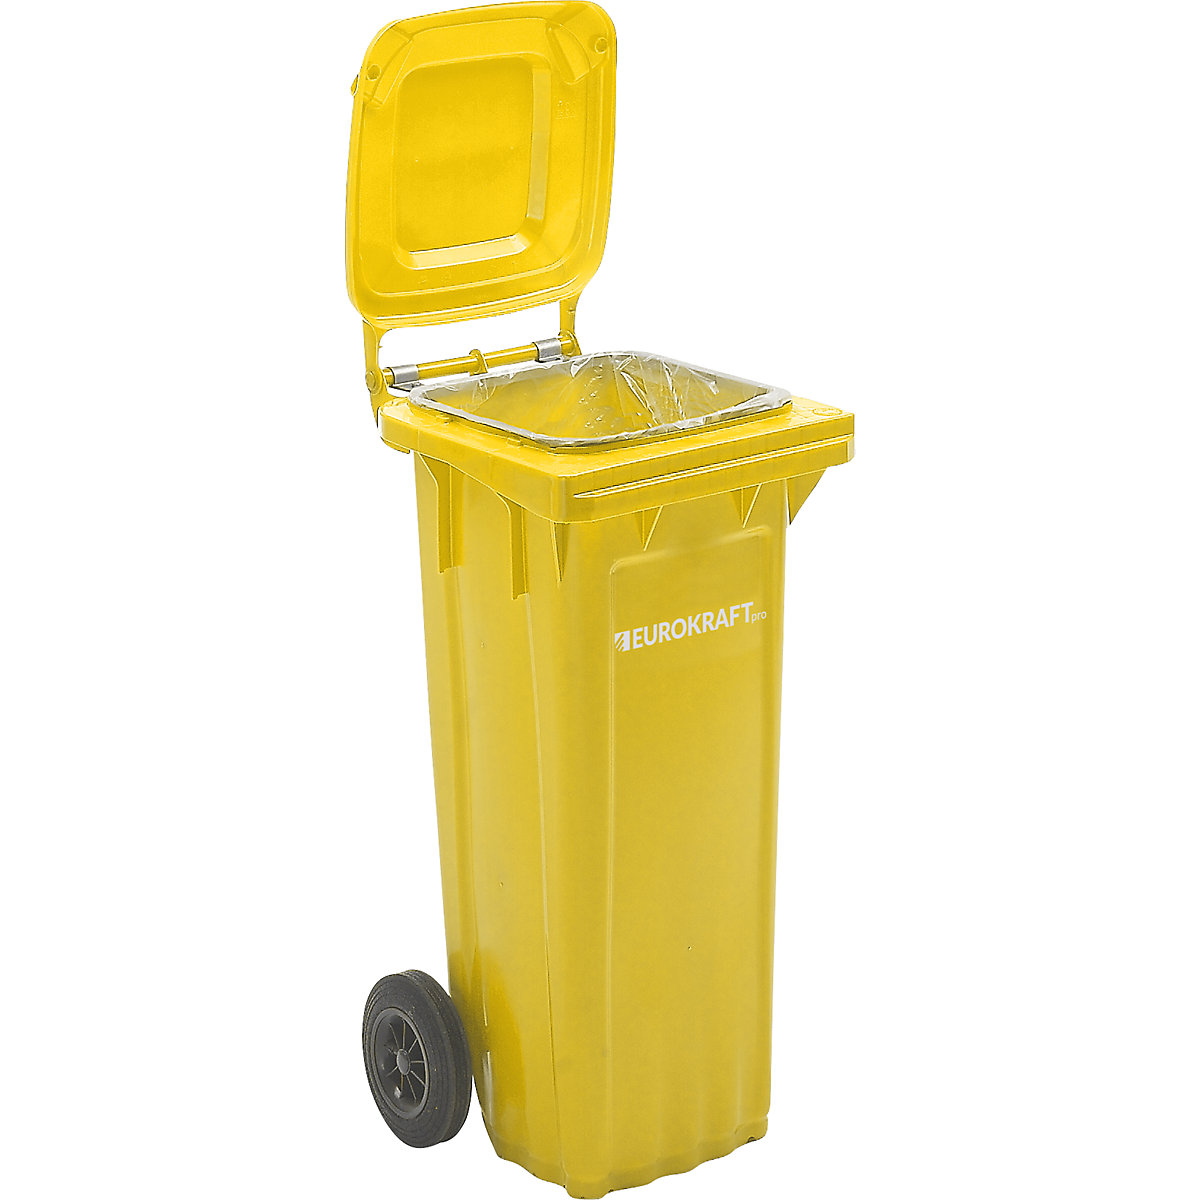 Pojemnik na odpady, z tworzywa, DIN EN 840 – eurokraft pro, poj. 80 l, szer. x wys. x głęb. 448 x 932 x 514 mm, żółty, od 5 szt.-5